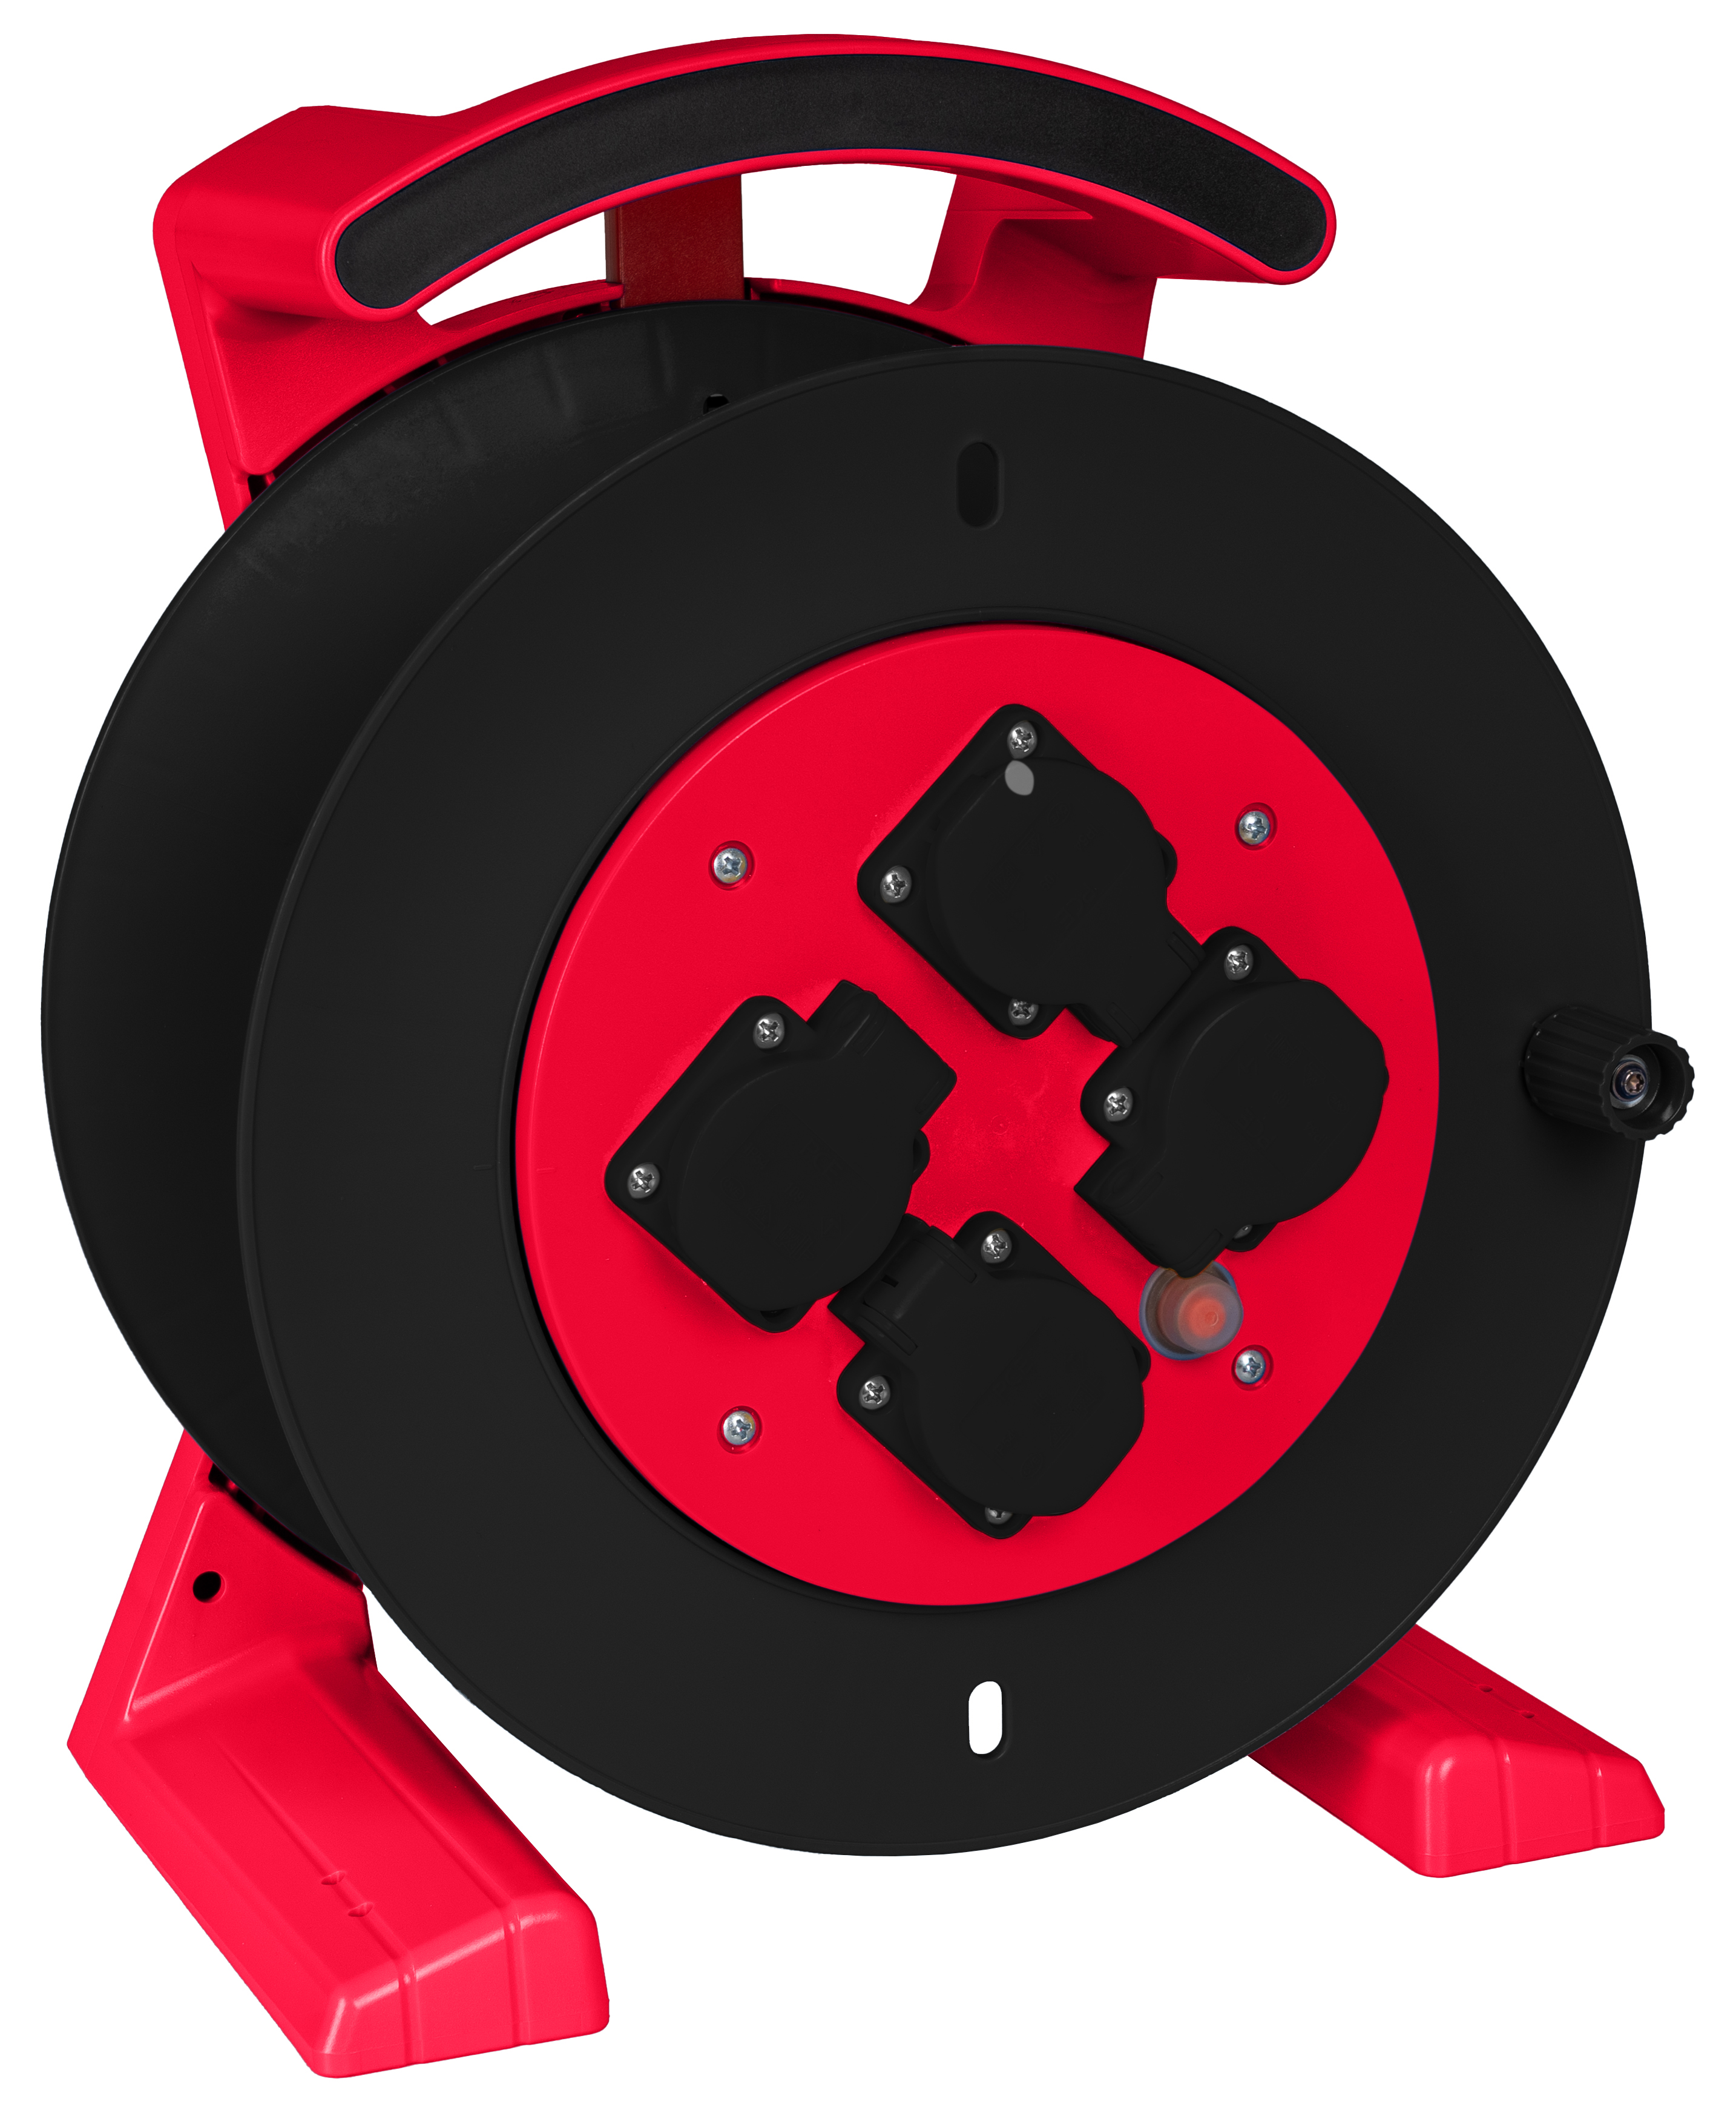 JUMBO kabelhaspel 2.0, lege haspel in rood-zwart, 4x schokbestendig wandcontactdozen